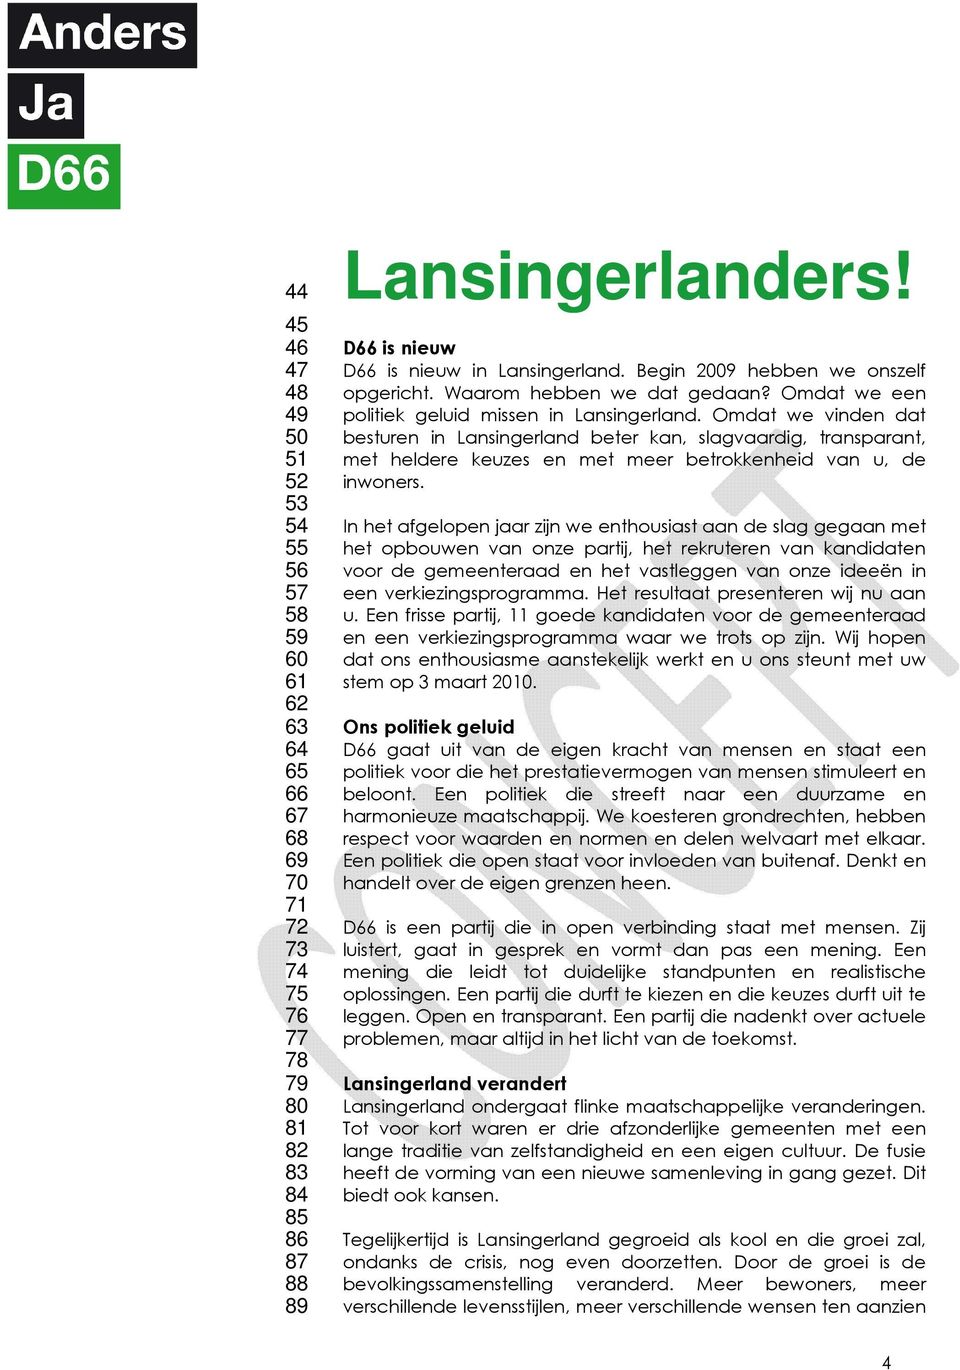 Omdat we vinden dat besturen in Lansingerland beter kan, slagvaardig, transparant, met heldere keuzes en met meer betrokkenheid van u, de inwoners.